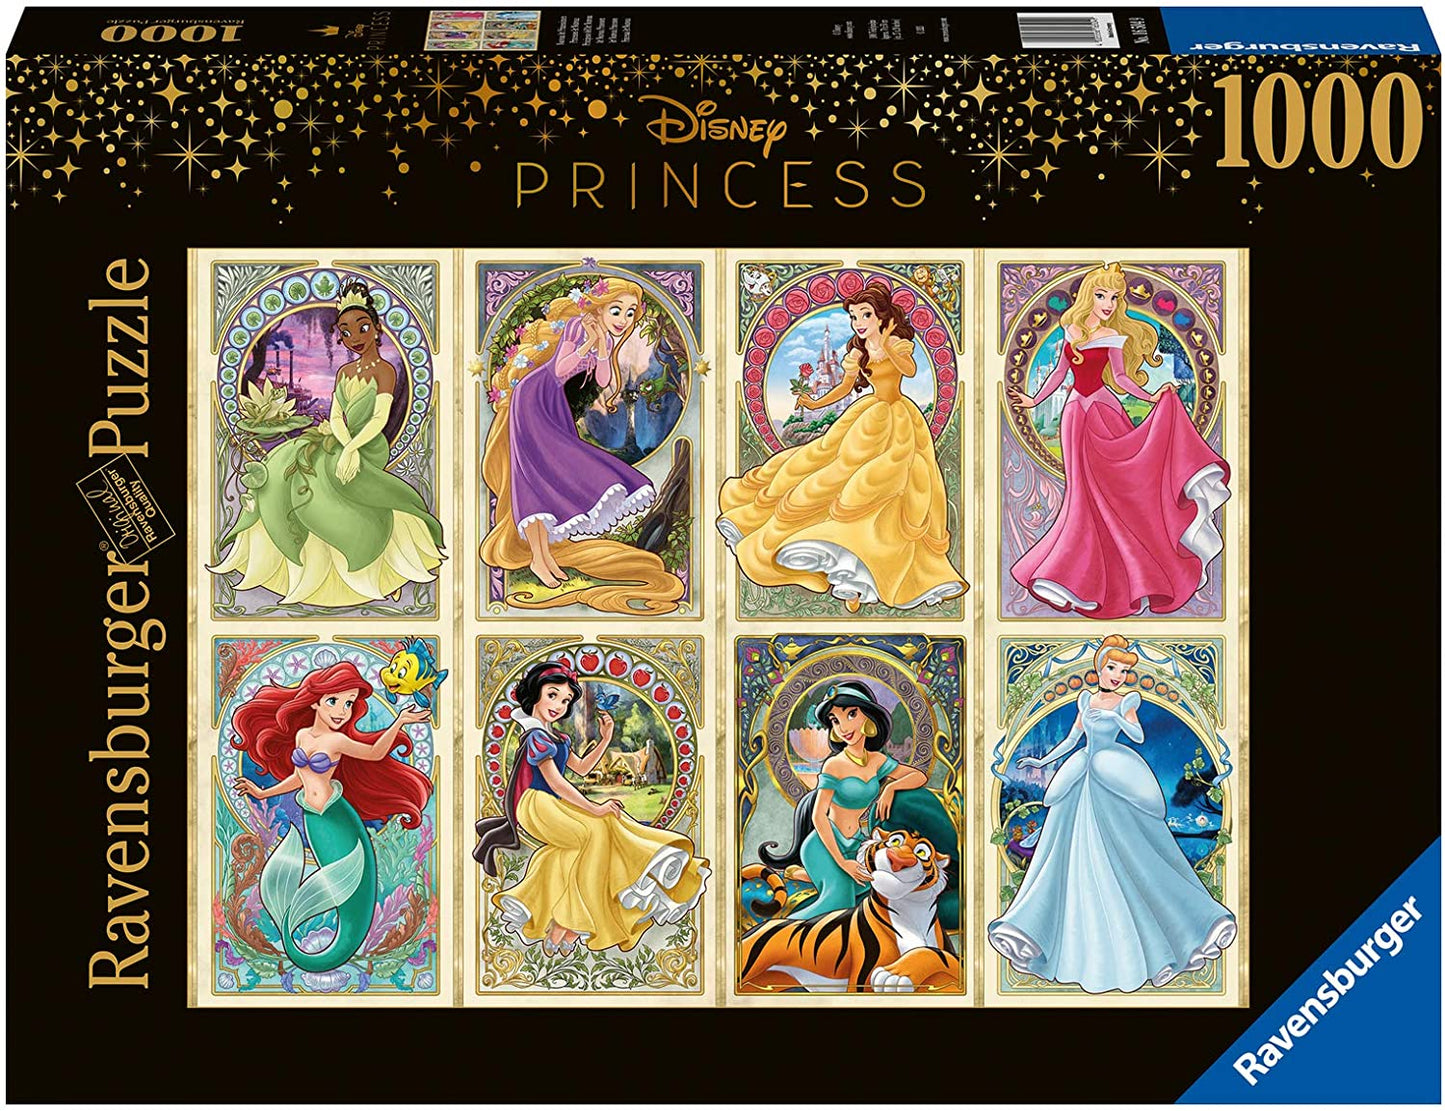 Disney Princess by Disney, 1000 Piece Puzzle